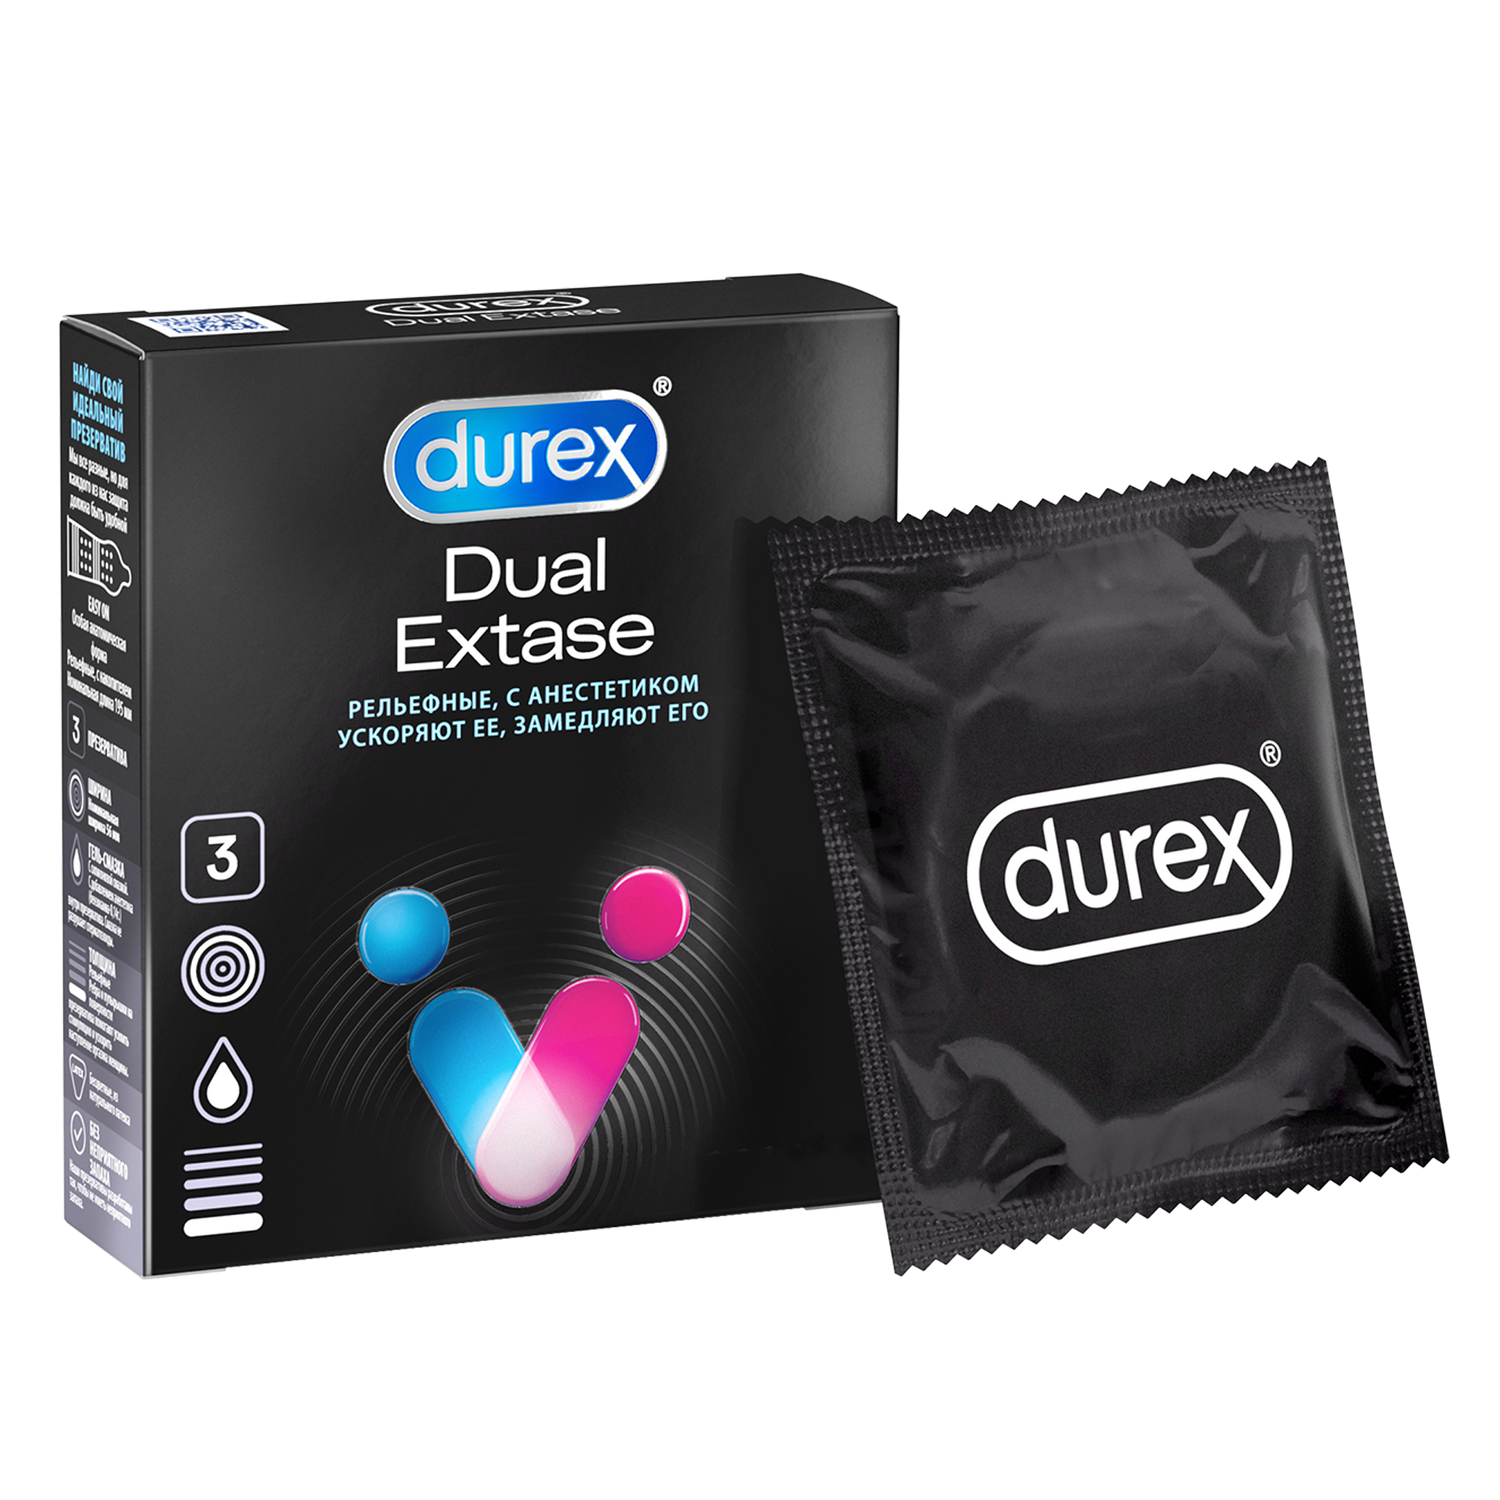 Презервативы Durex Dual Extase, рельефные с анестетиком, 3 шт. durex dual extase презервативы 3 3 шт